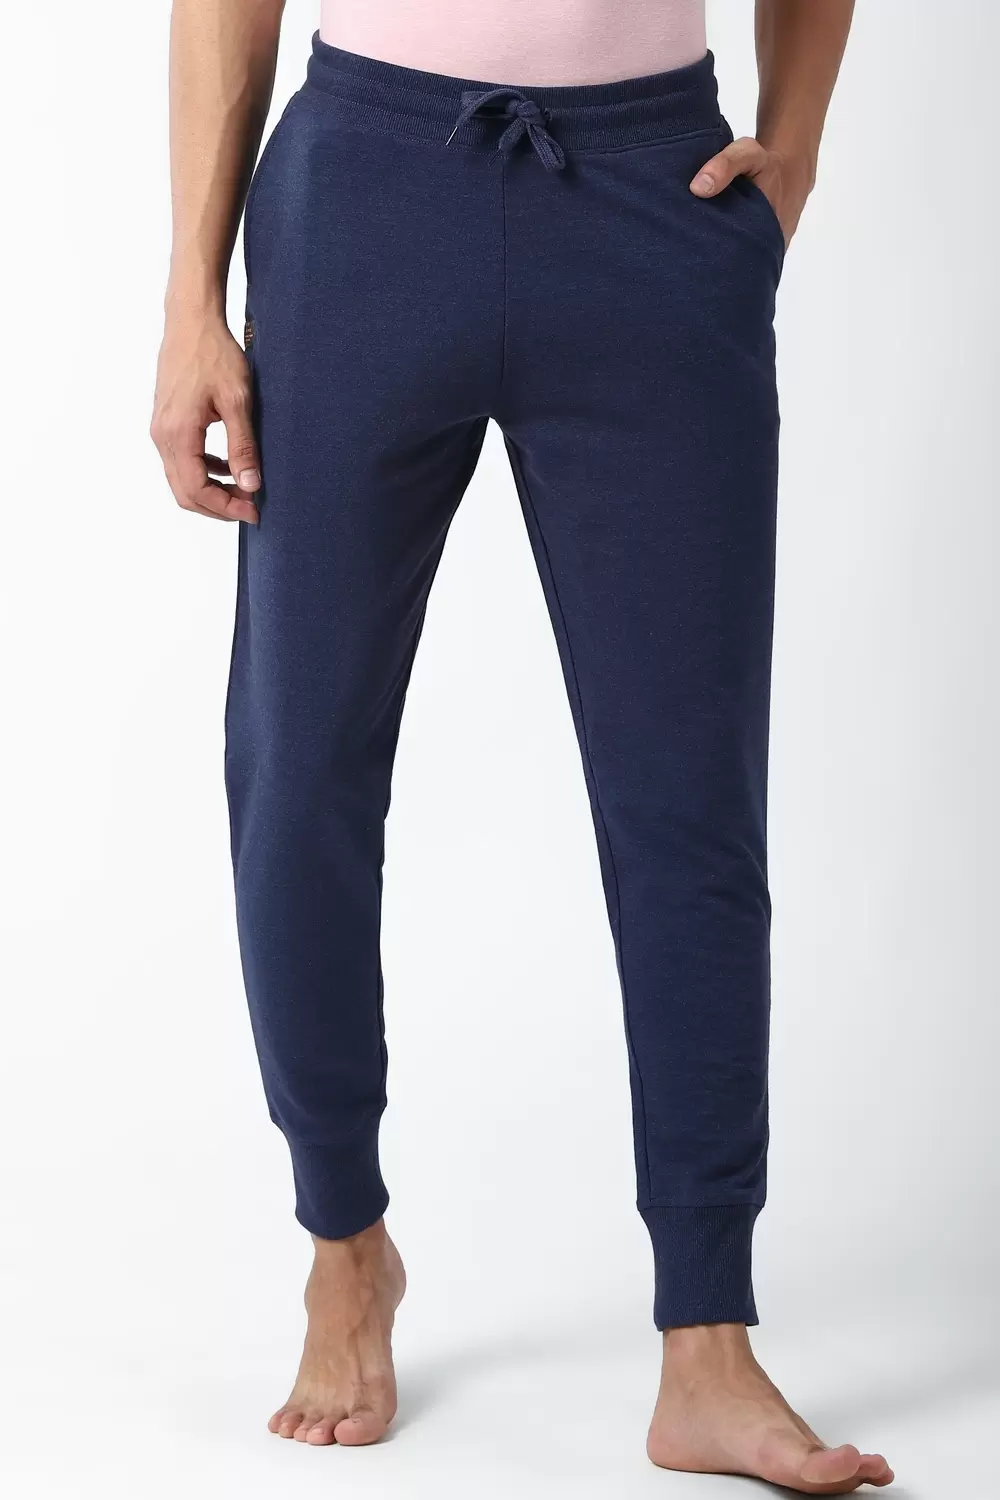 Buy Men Grey Textured Active Wear Track Pants Online - 87425 | Peter England